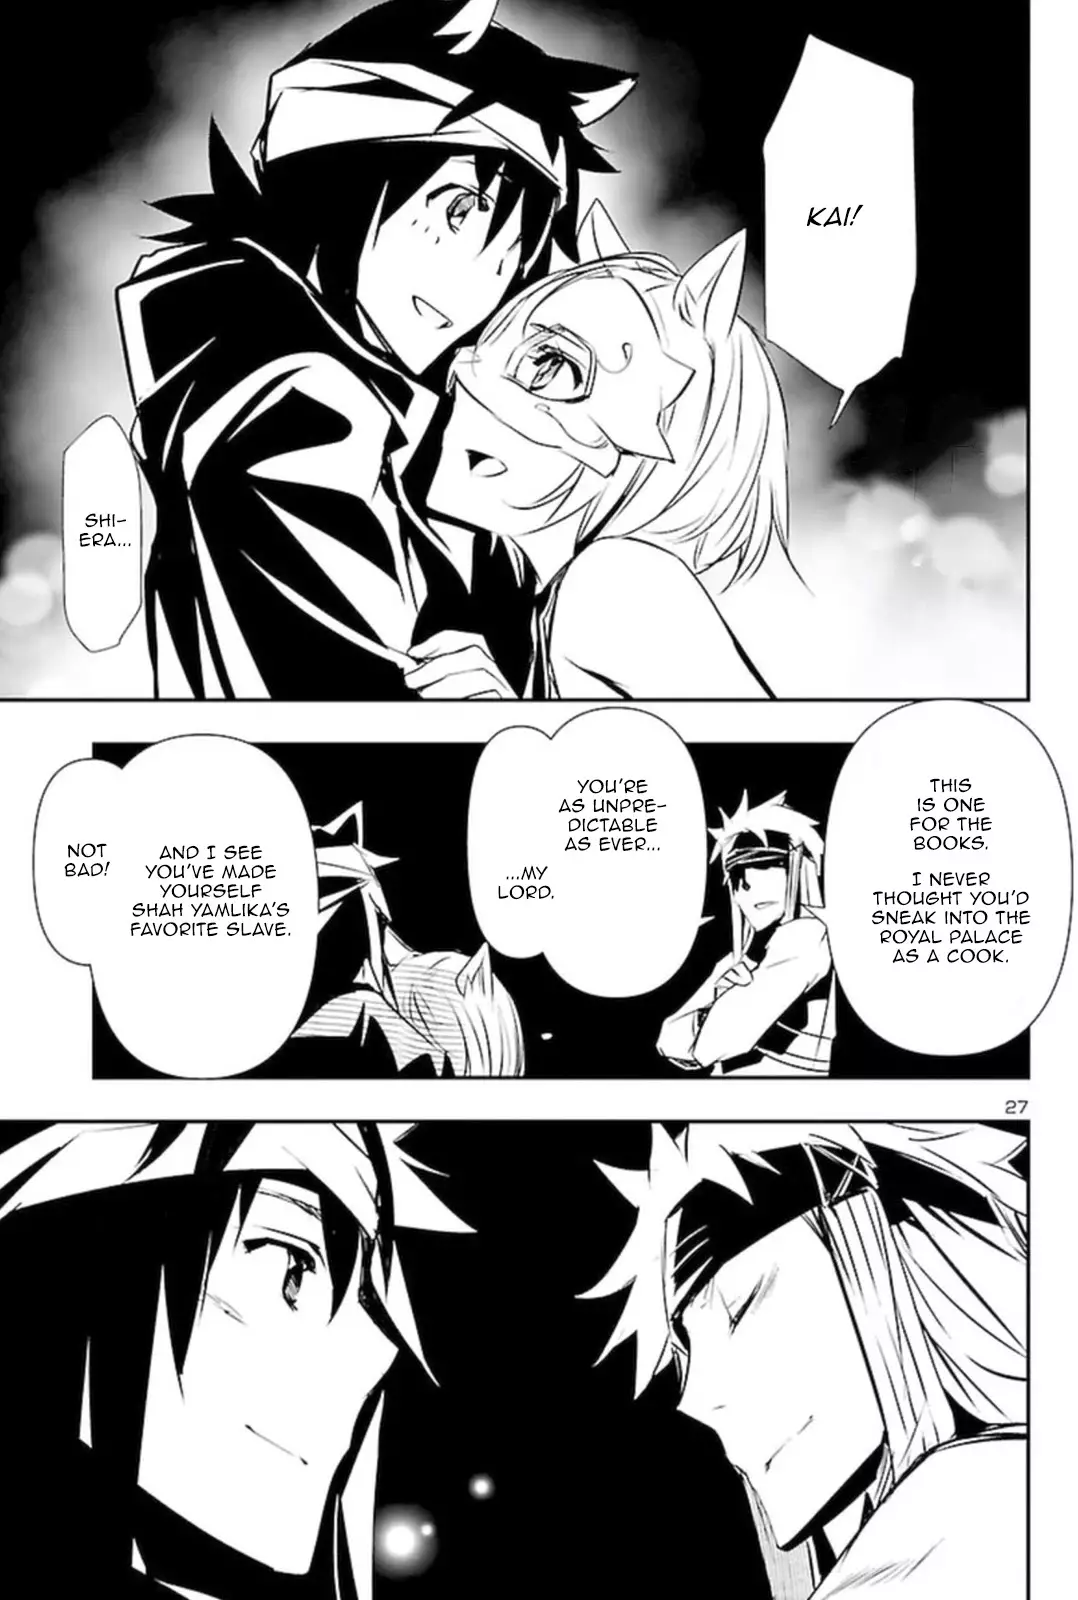 Shinju no Nectar - 58 page 26